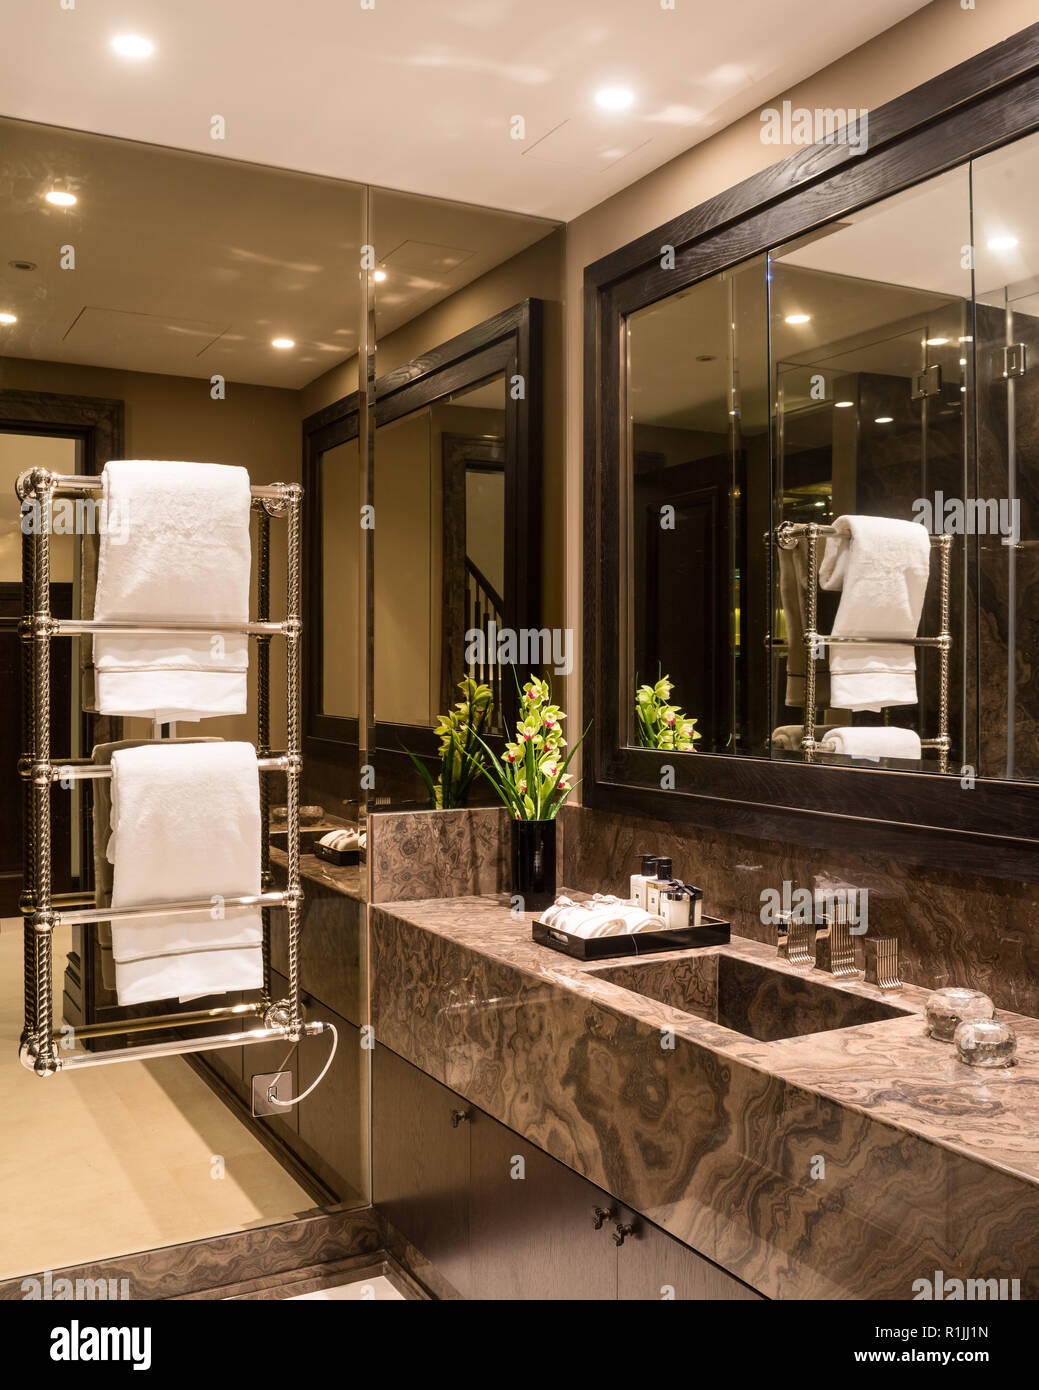 Salle de bains avec miroir mural marron Banque D'Images